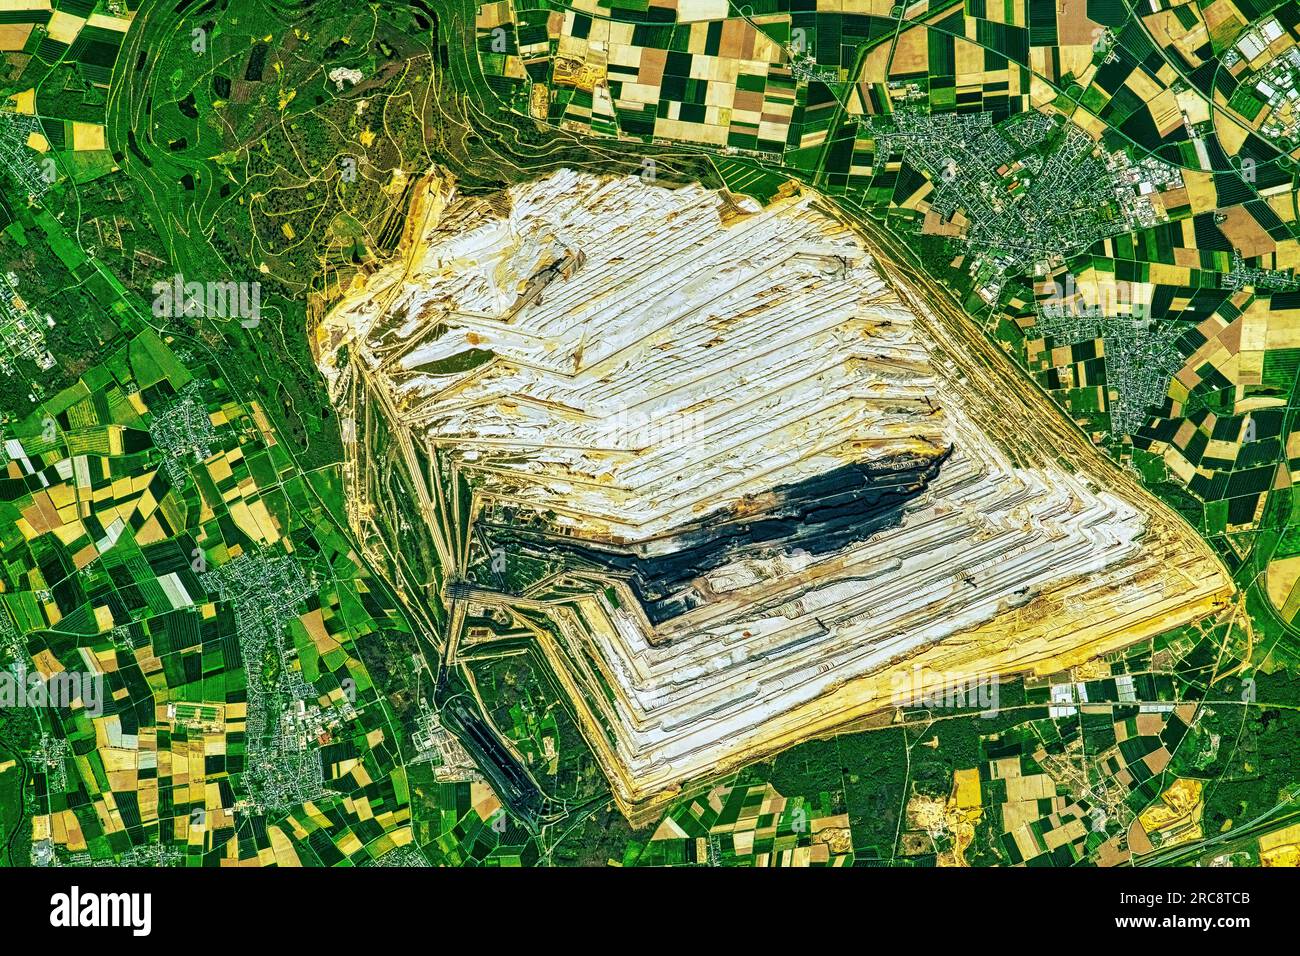 Vista dall'alto della miniera di carbone di Hambach in Germania. Immagine della NASA. Linee guida per l'uso dei supporti: https://www.nasa.gov/multimedia/guidelines/index.html Foto Stock